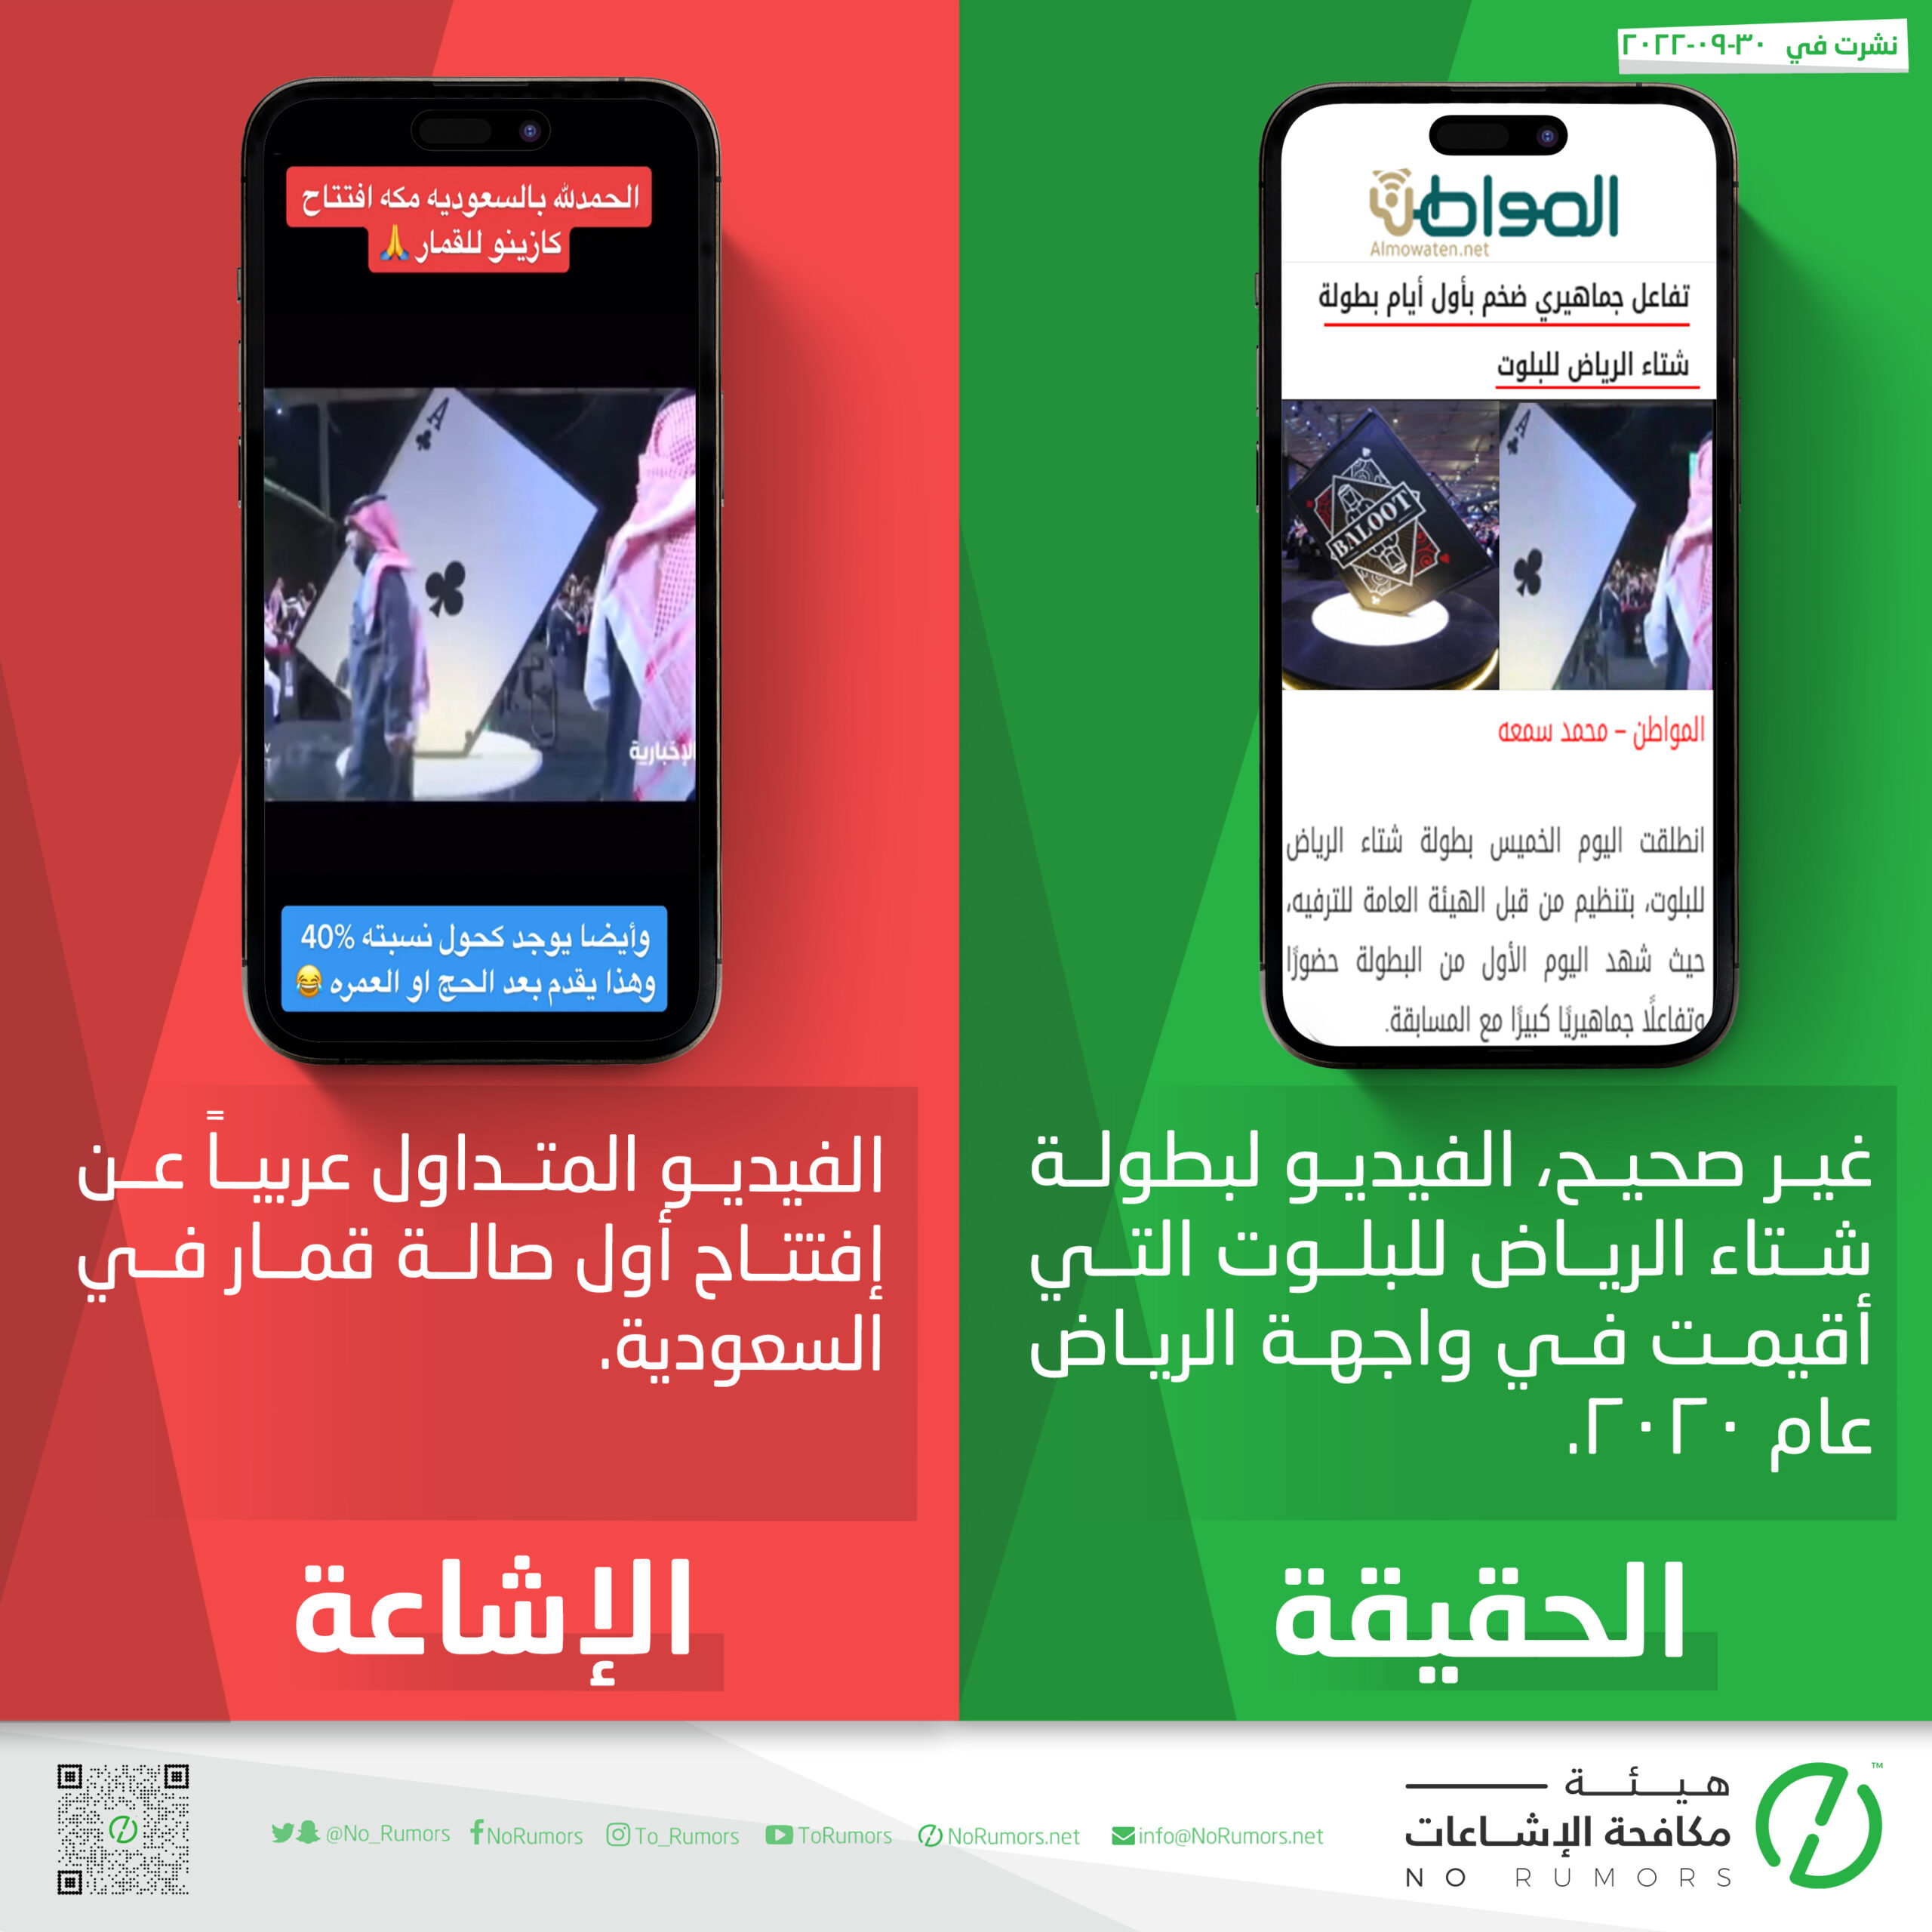 حقيقة الفيديو المتداول عربياً عن إفتتاح أول صالة قمار في السعودية